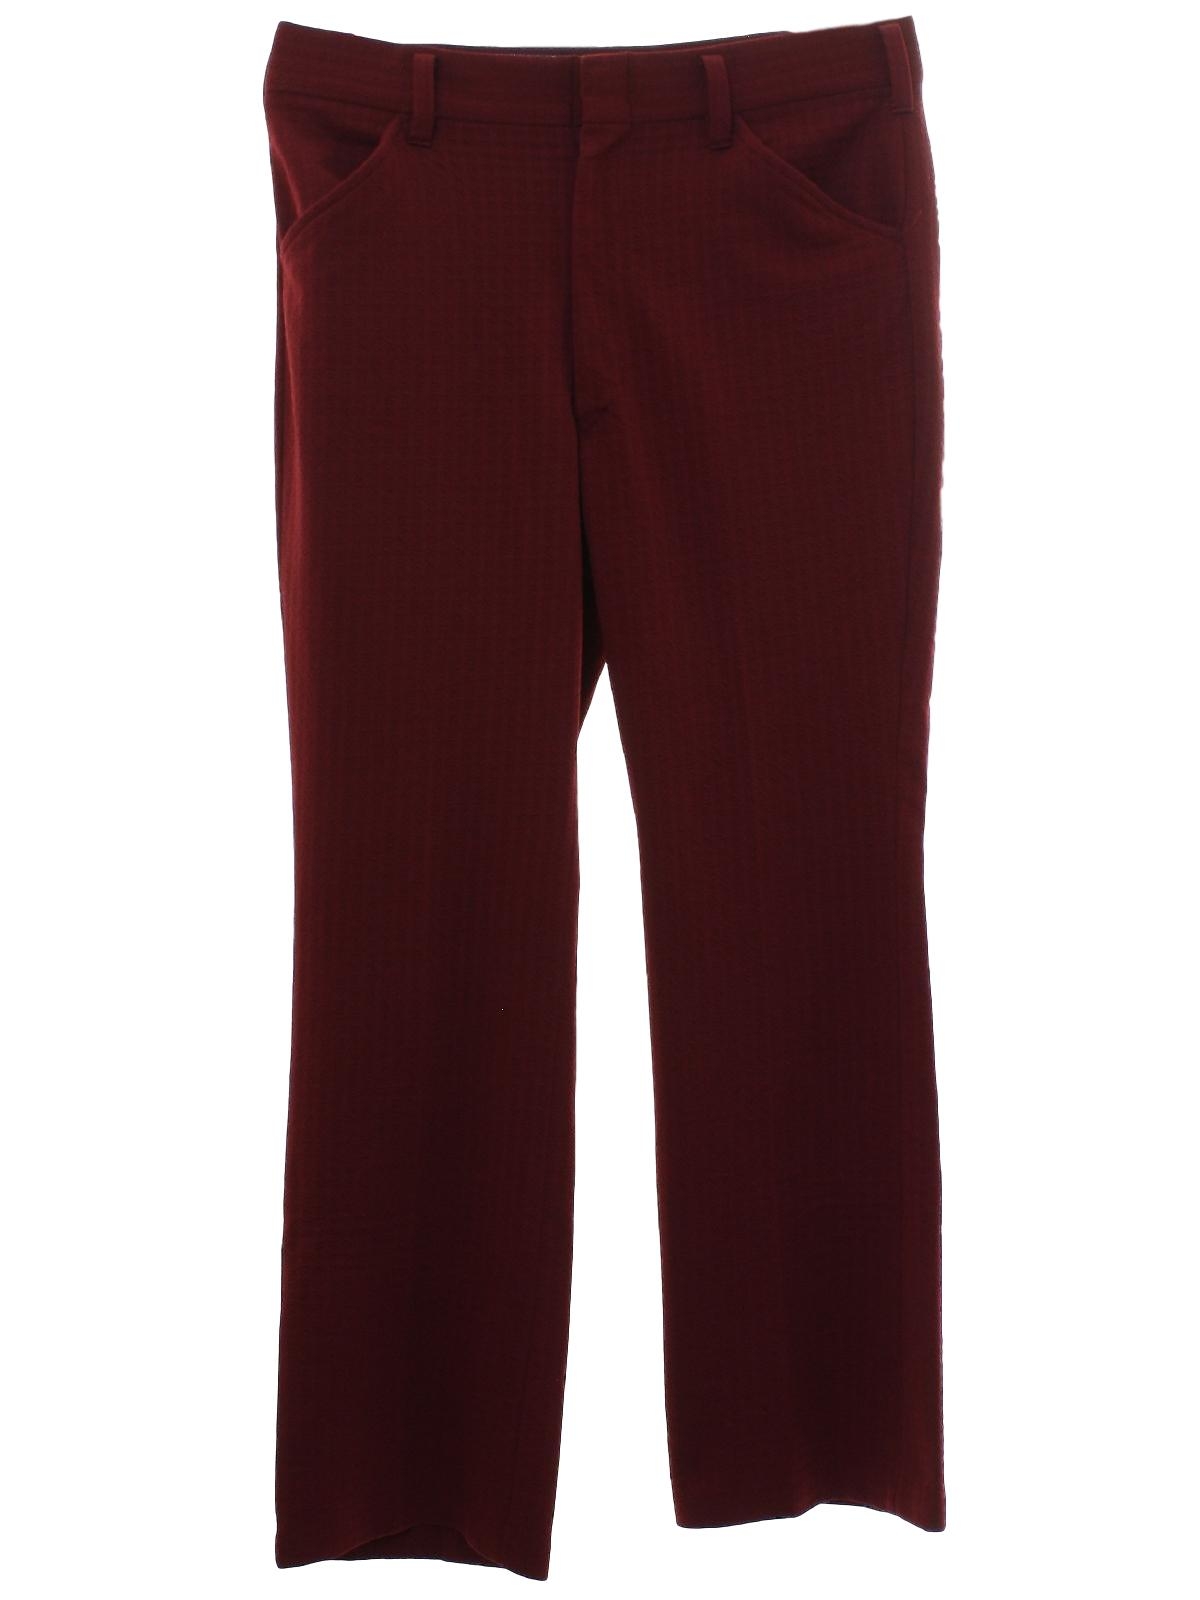 Vintage Kmart 70's Flared Pants / Flares: 70s -Kmart- Mens burgundy red ...